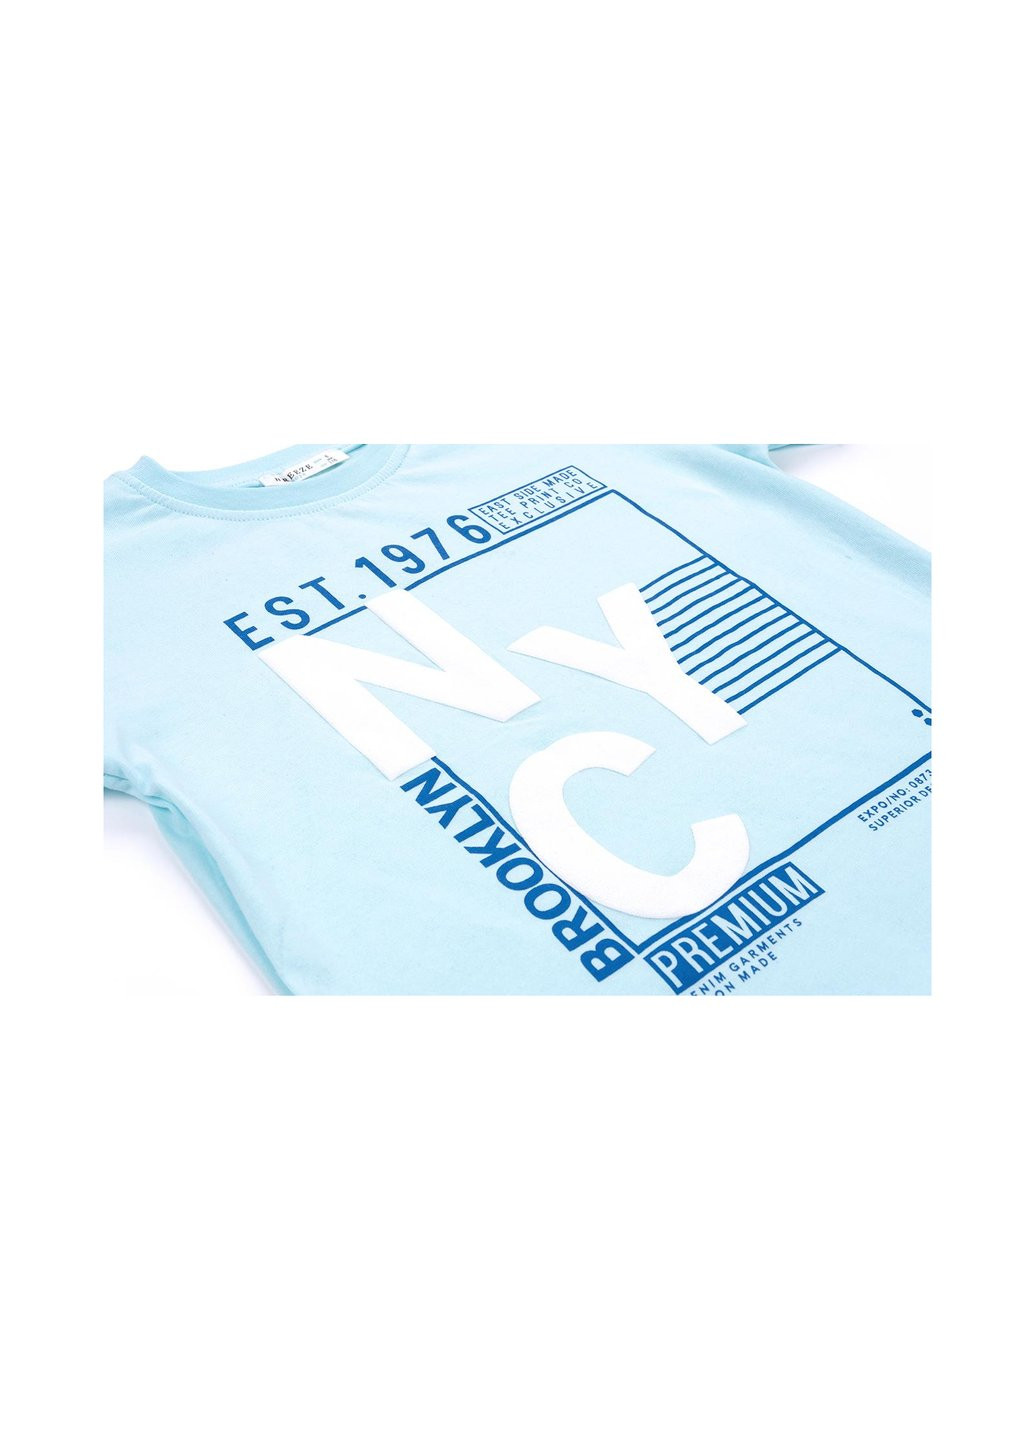 Голубой летний набор детской одежды "brooklyn" (10143-128b-blue) E&H